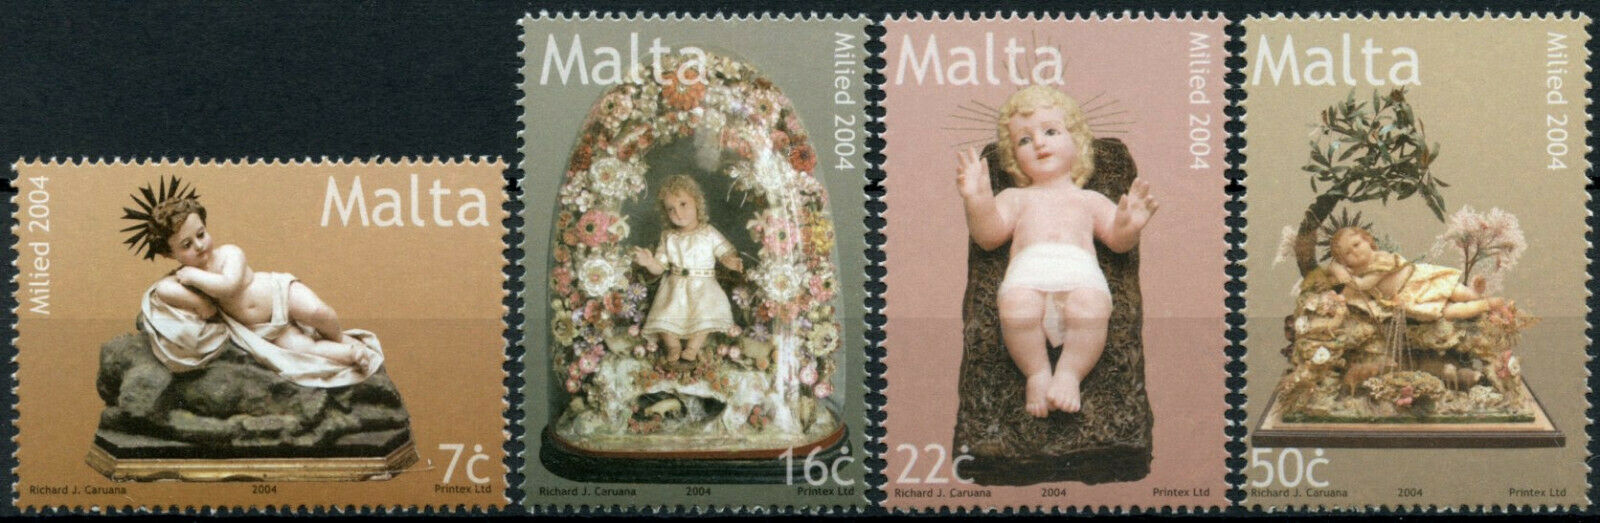 Malta Christmas Stamps 2004 MNH Seasonal Bambino Models 4v Set